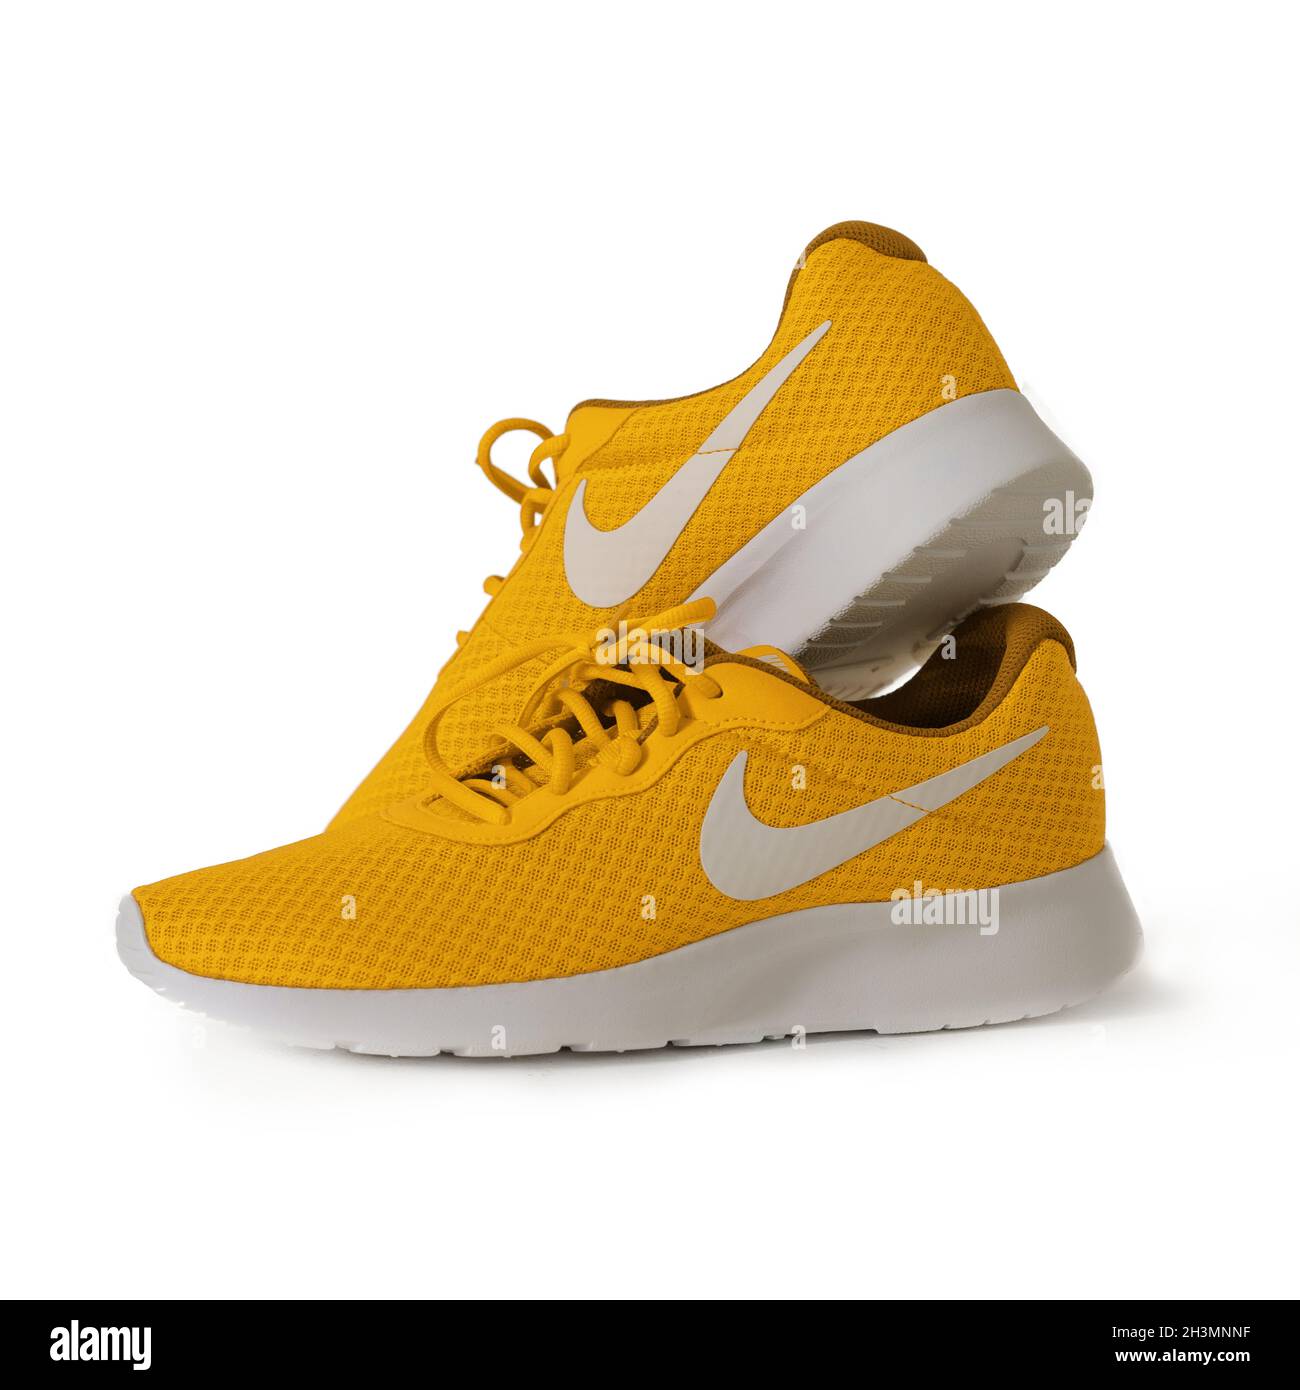 Gelbe Sneaker der Marke Nike. Sport Unisex-Modell zum Laufen. Schuhe auf  weißem Hintergrund. Lifestyle-Konzept. Mai 2019. Kiew, Großbritannien  Stockfotografie - Alamy